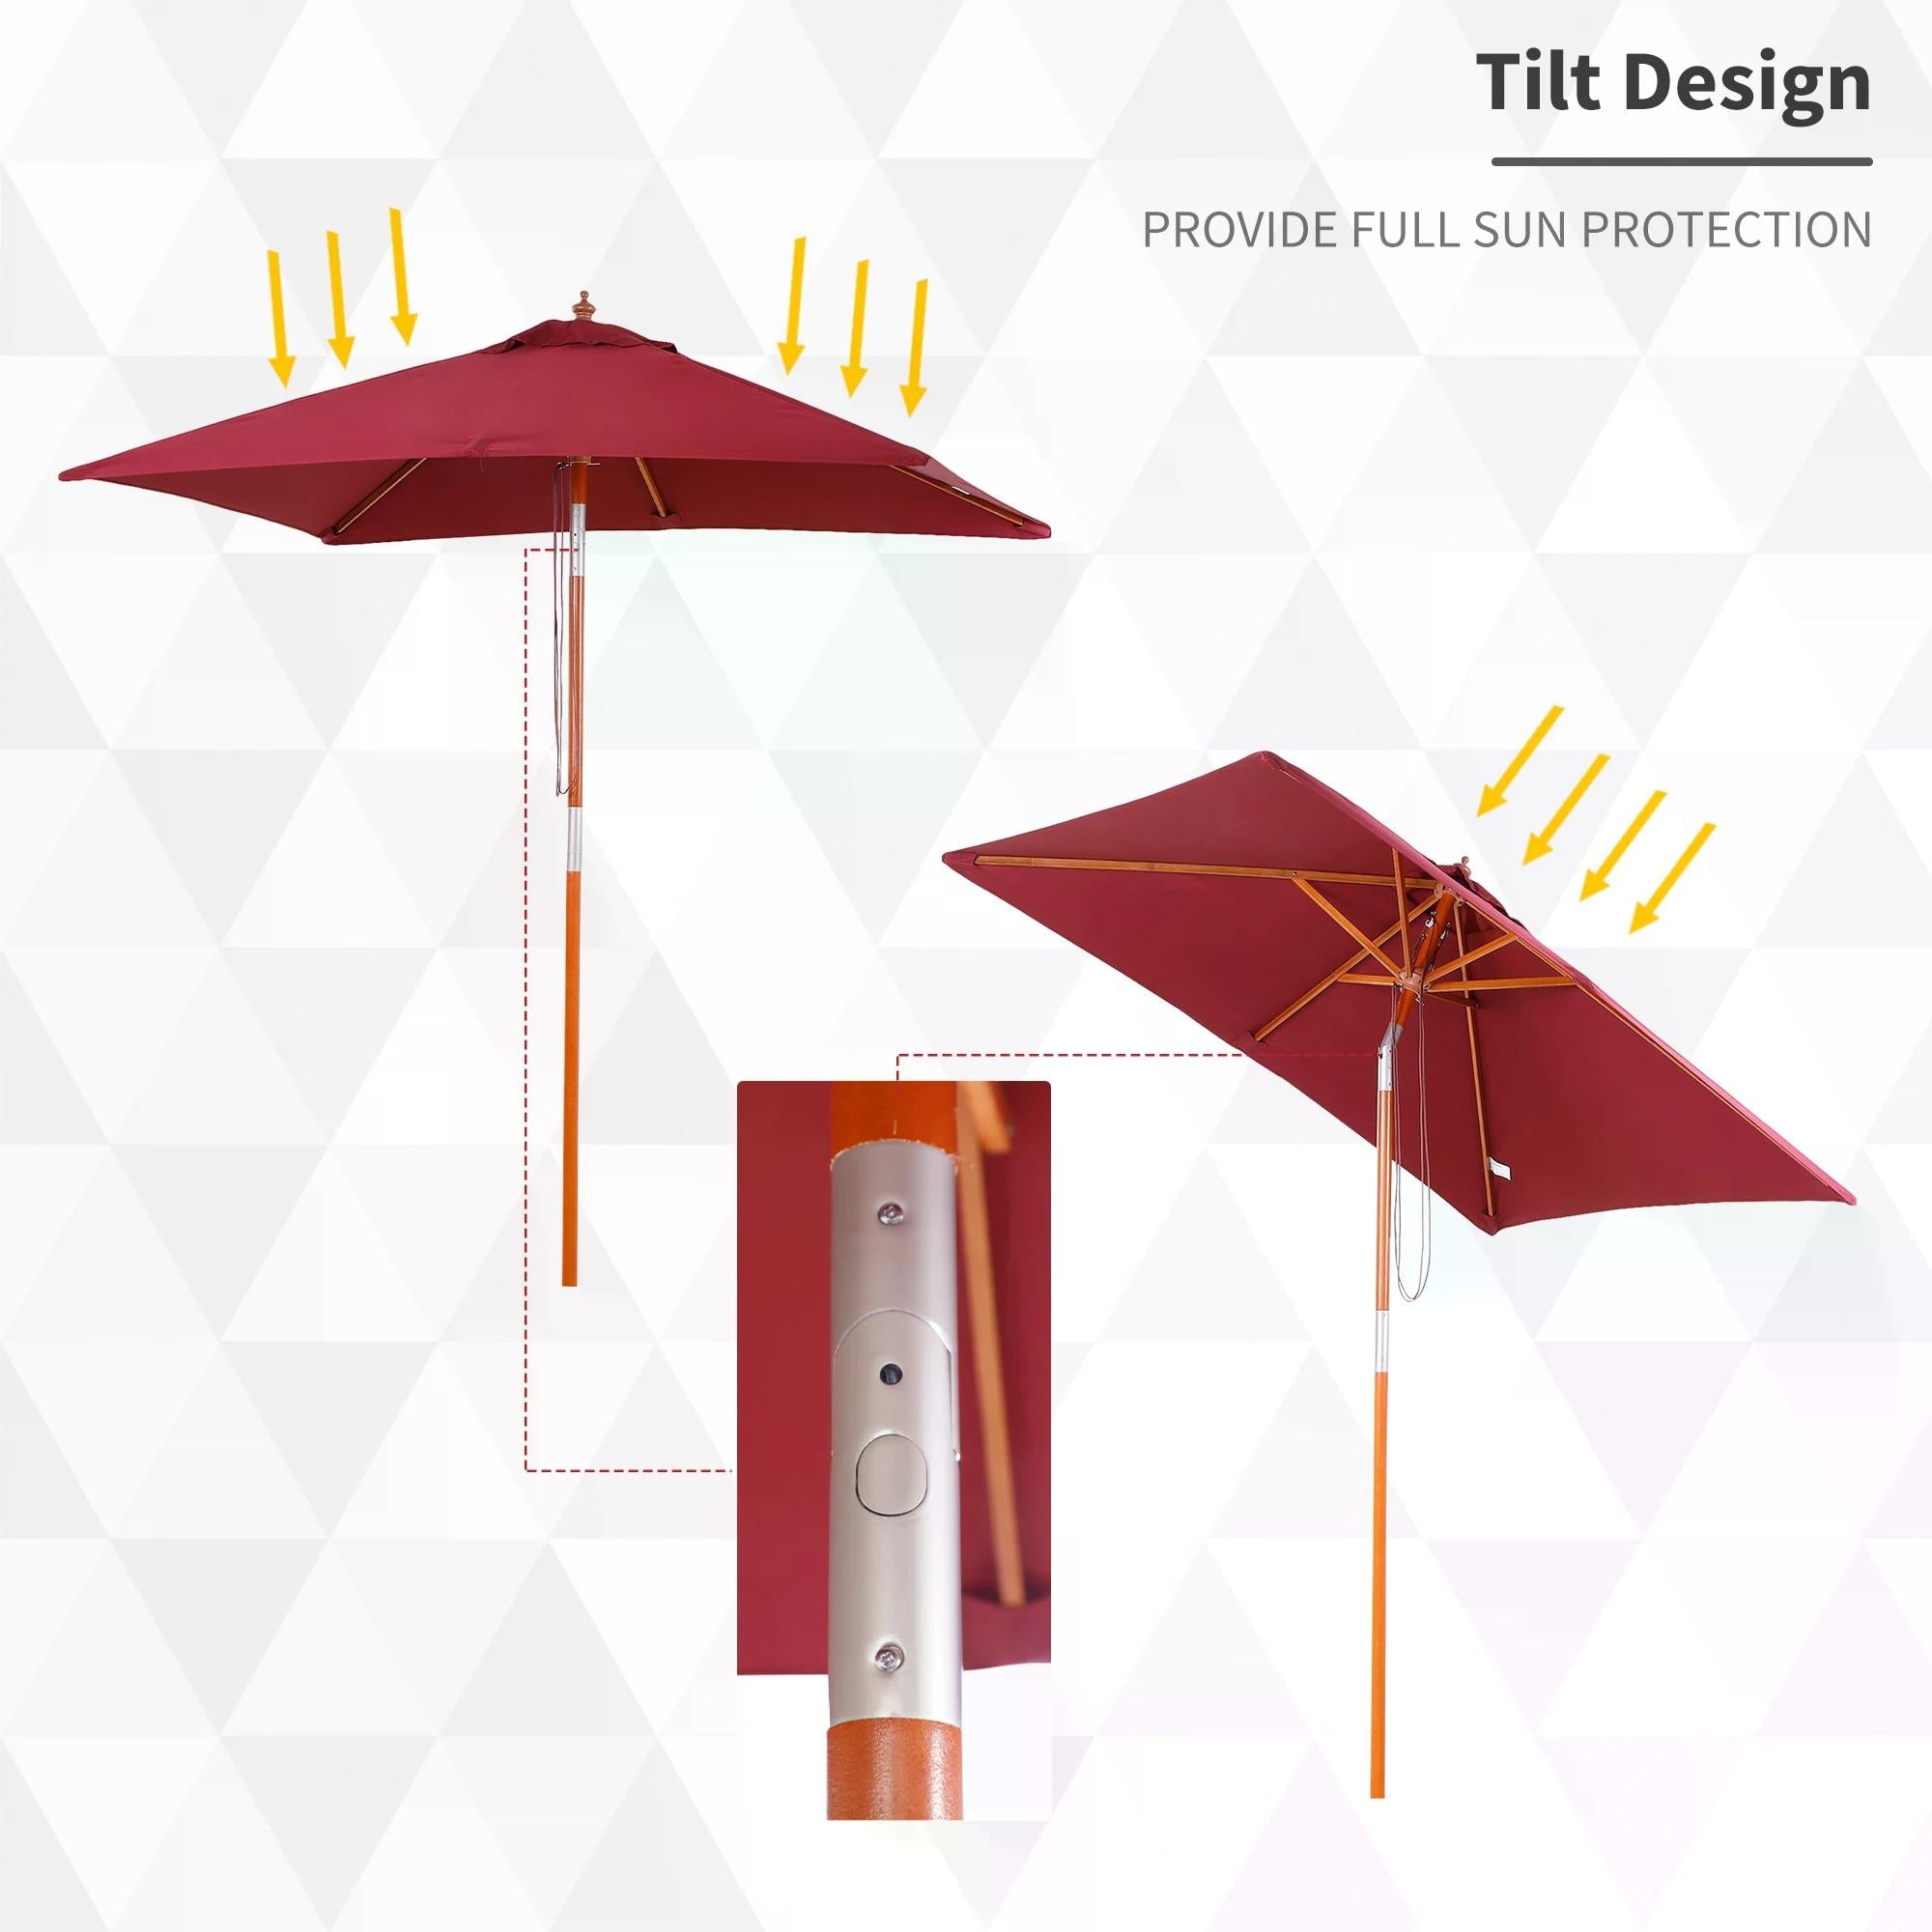 2 x 1.5m Patio Garden Parasol Sun Umbrella Sunshade Canopy Outdoor Backyard Furniture Fir Wooden Pole 6 Ribs Tilt Mechanism - Wine Red-3